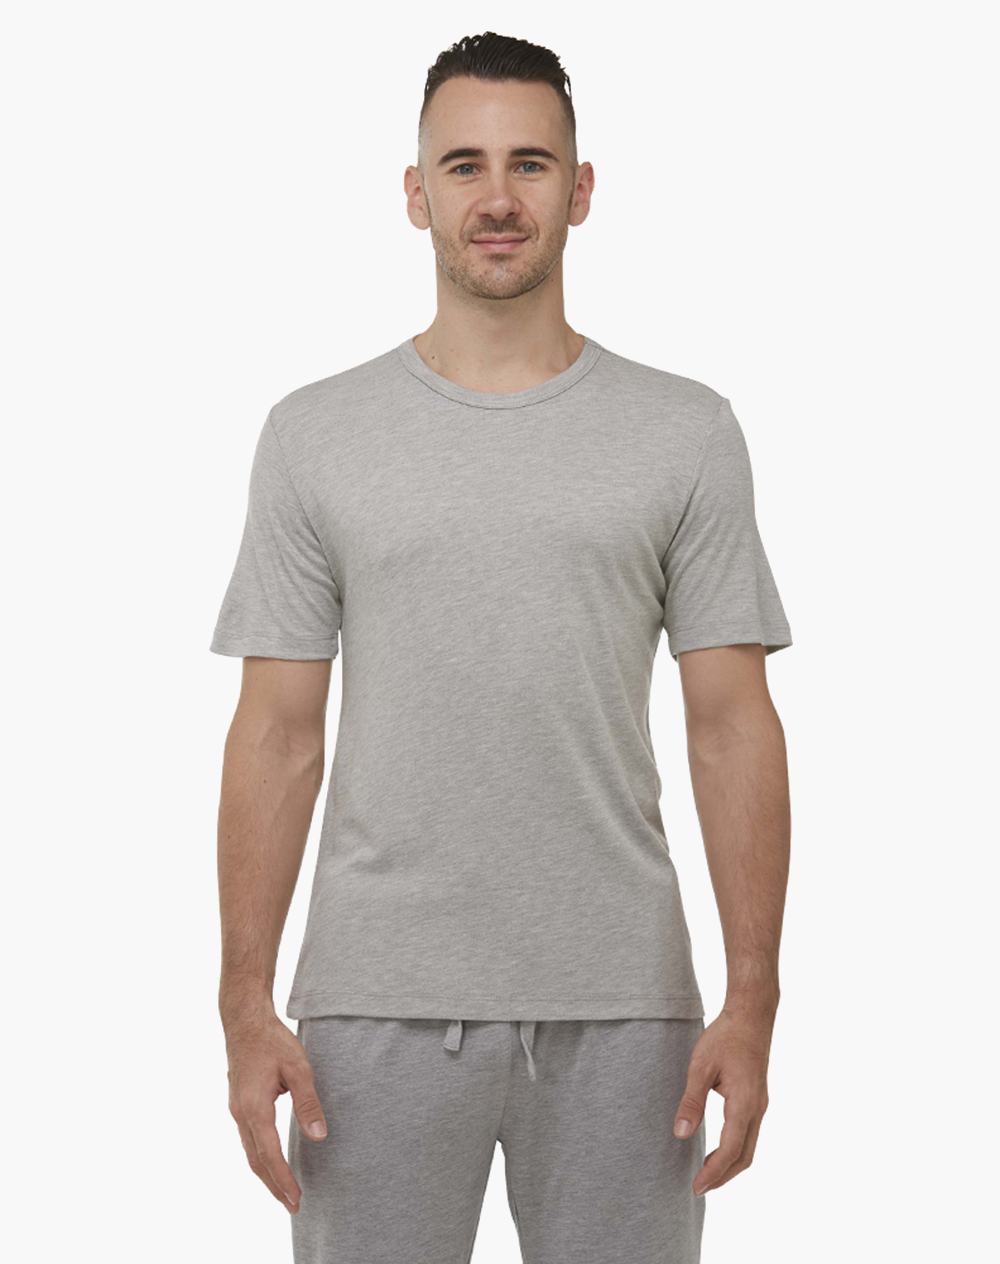 Core Sleep T-Shirt - Grey Marle